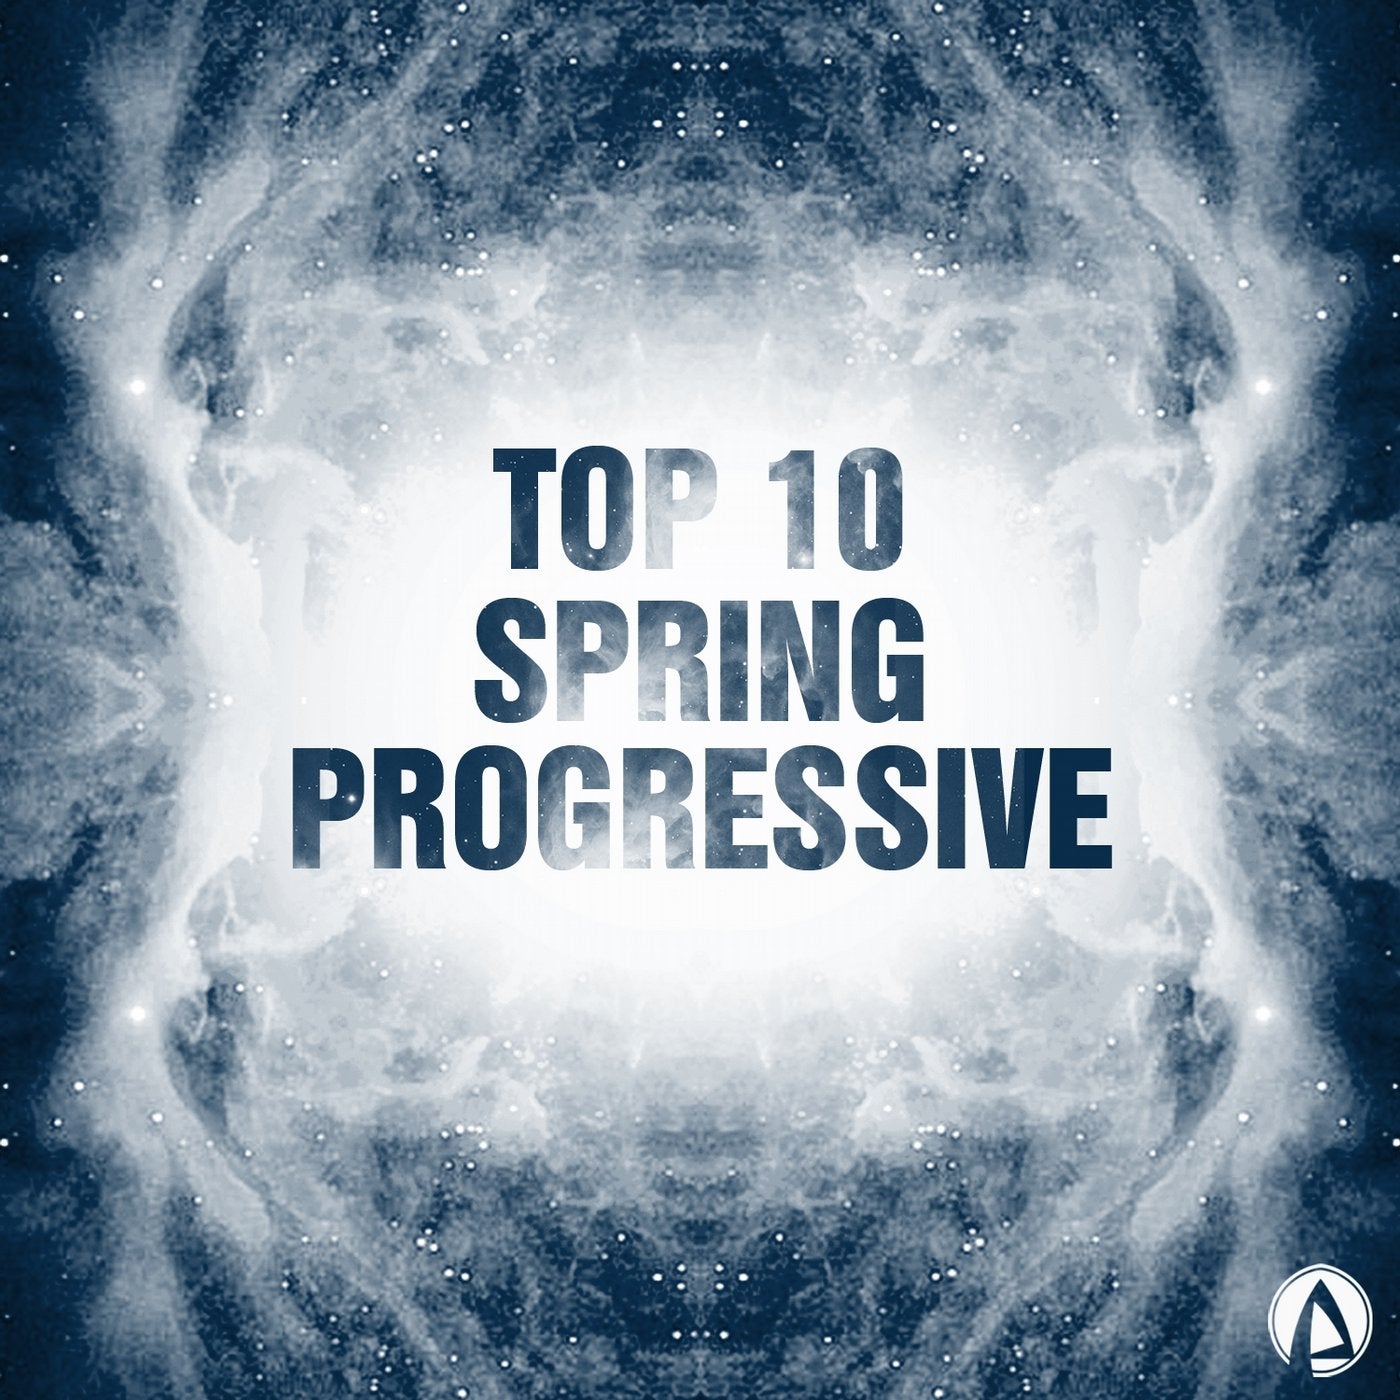 Top 10 Spring Progressive